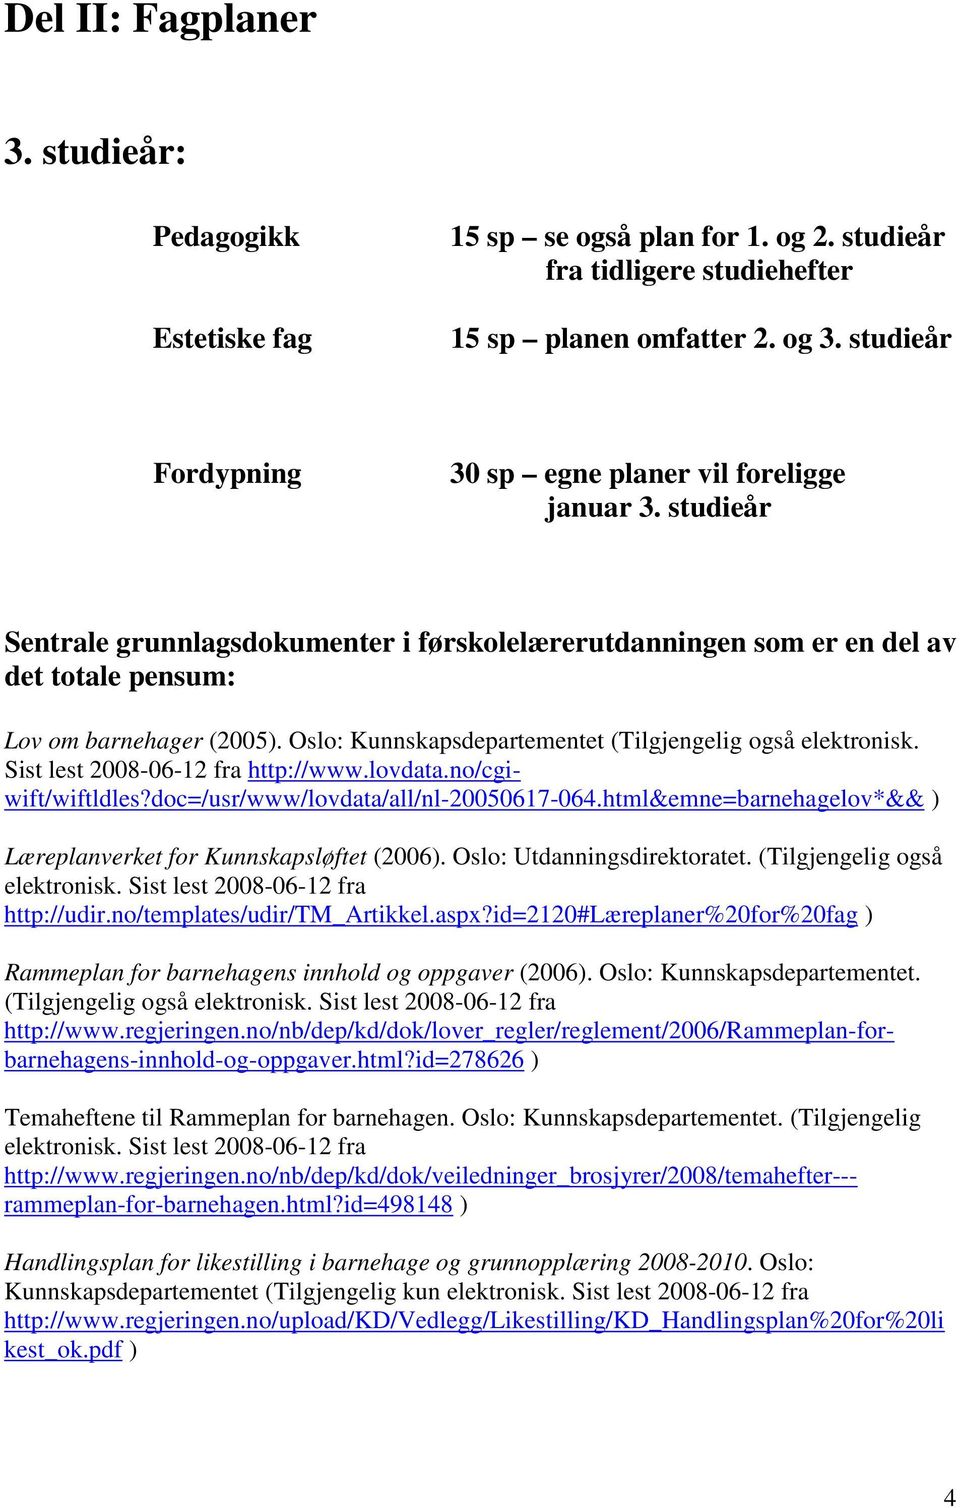 Oslo: Kunnskapsdepartementet (Tilgjengelig også elektronisk. Sist lest 2008-06-12 fra http://www.lovdata.no/cgiwift/wiftldles?doc=/usr/www/lovdata/all/nl-20050617-064.